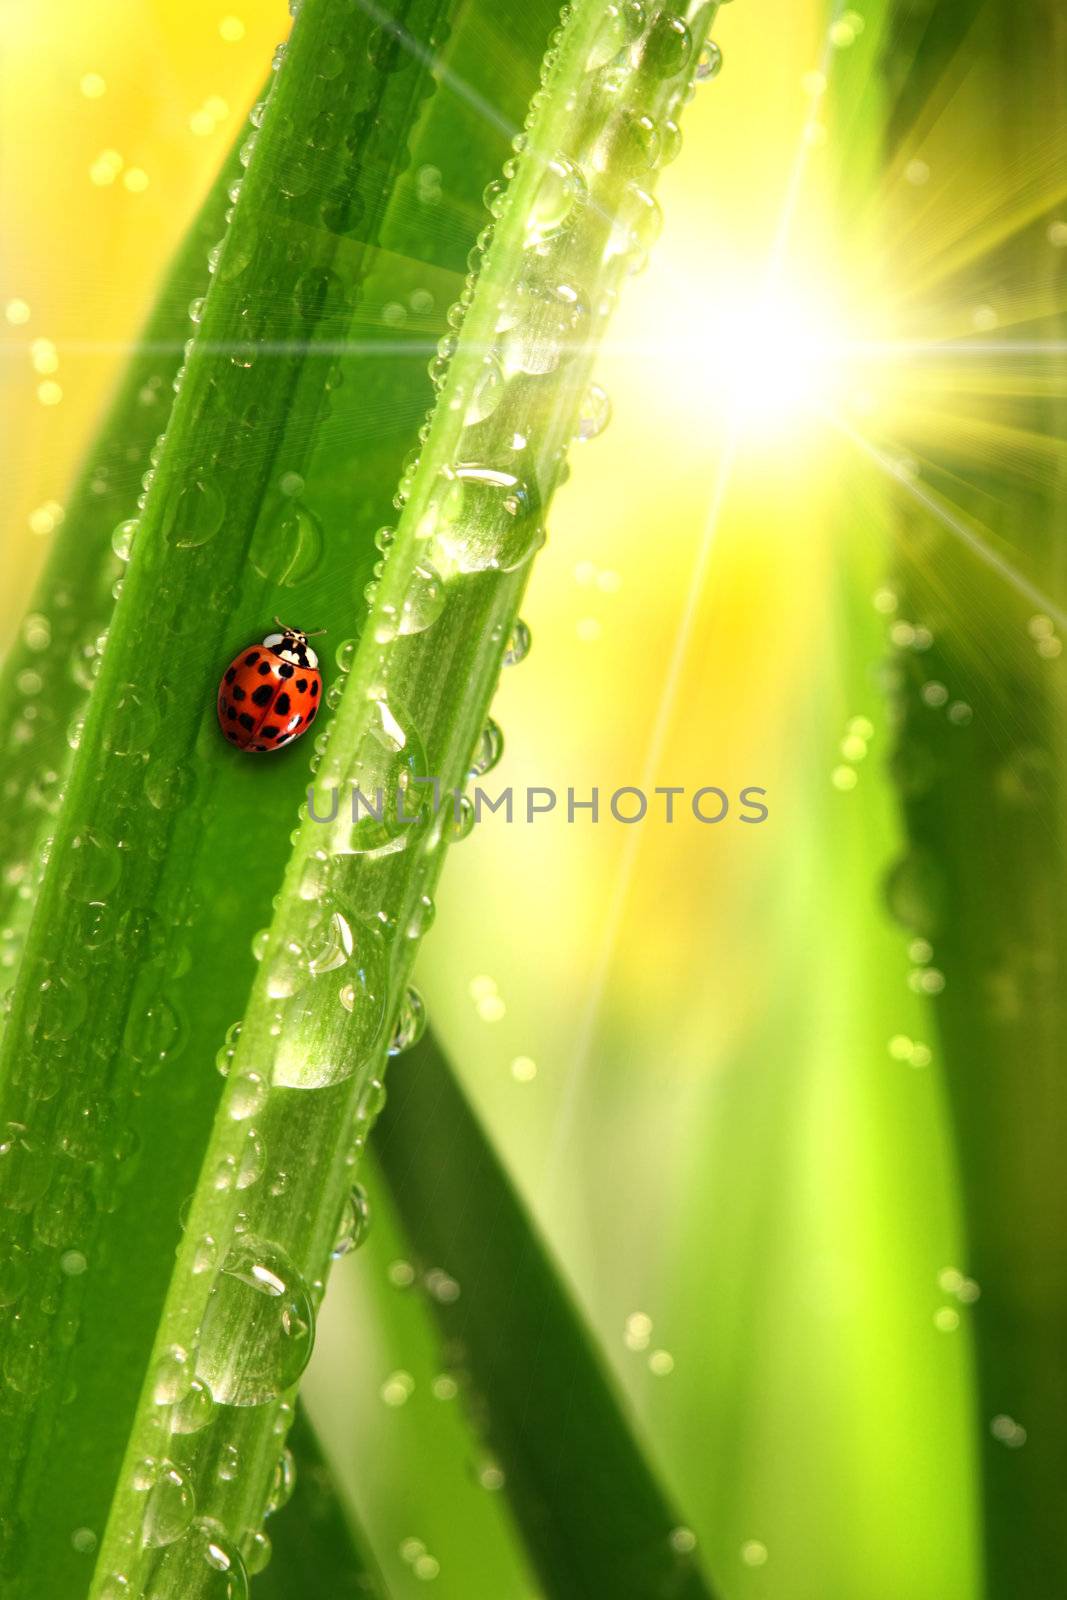 Ladybug climbing a leaf  by Sandralise